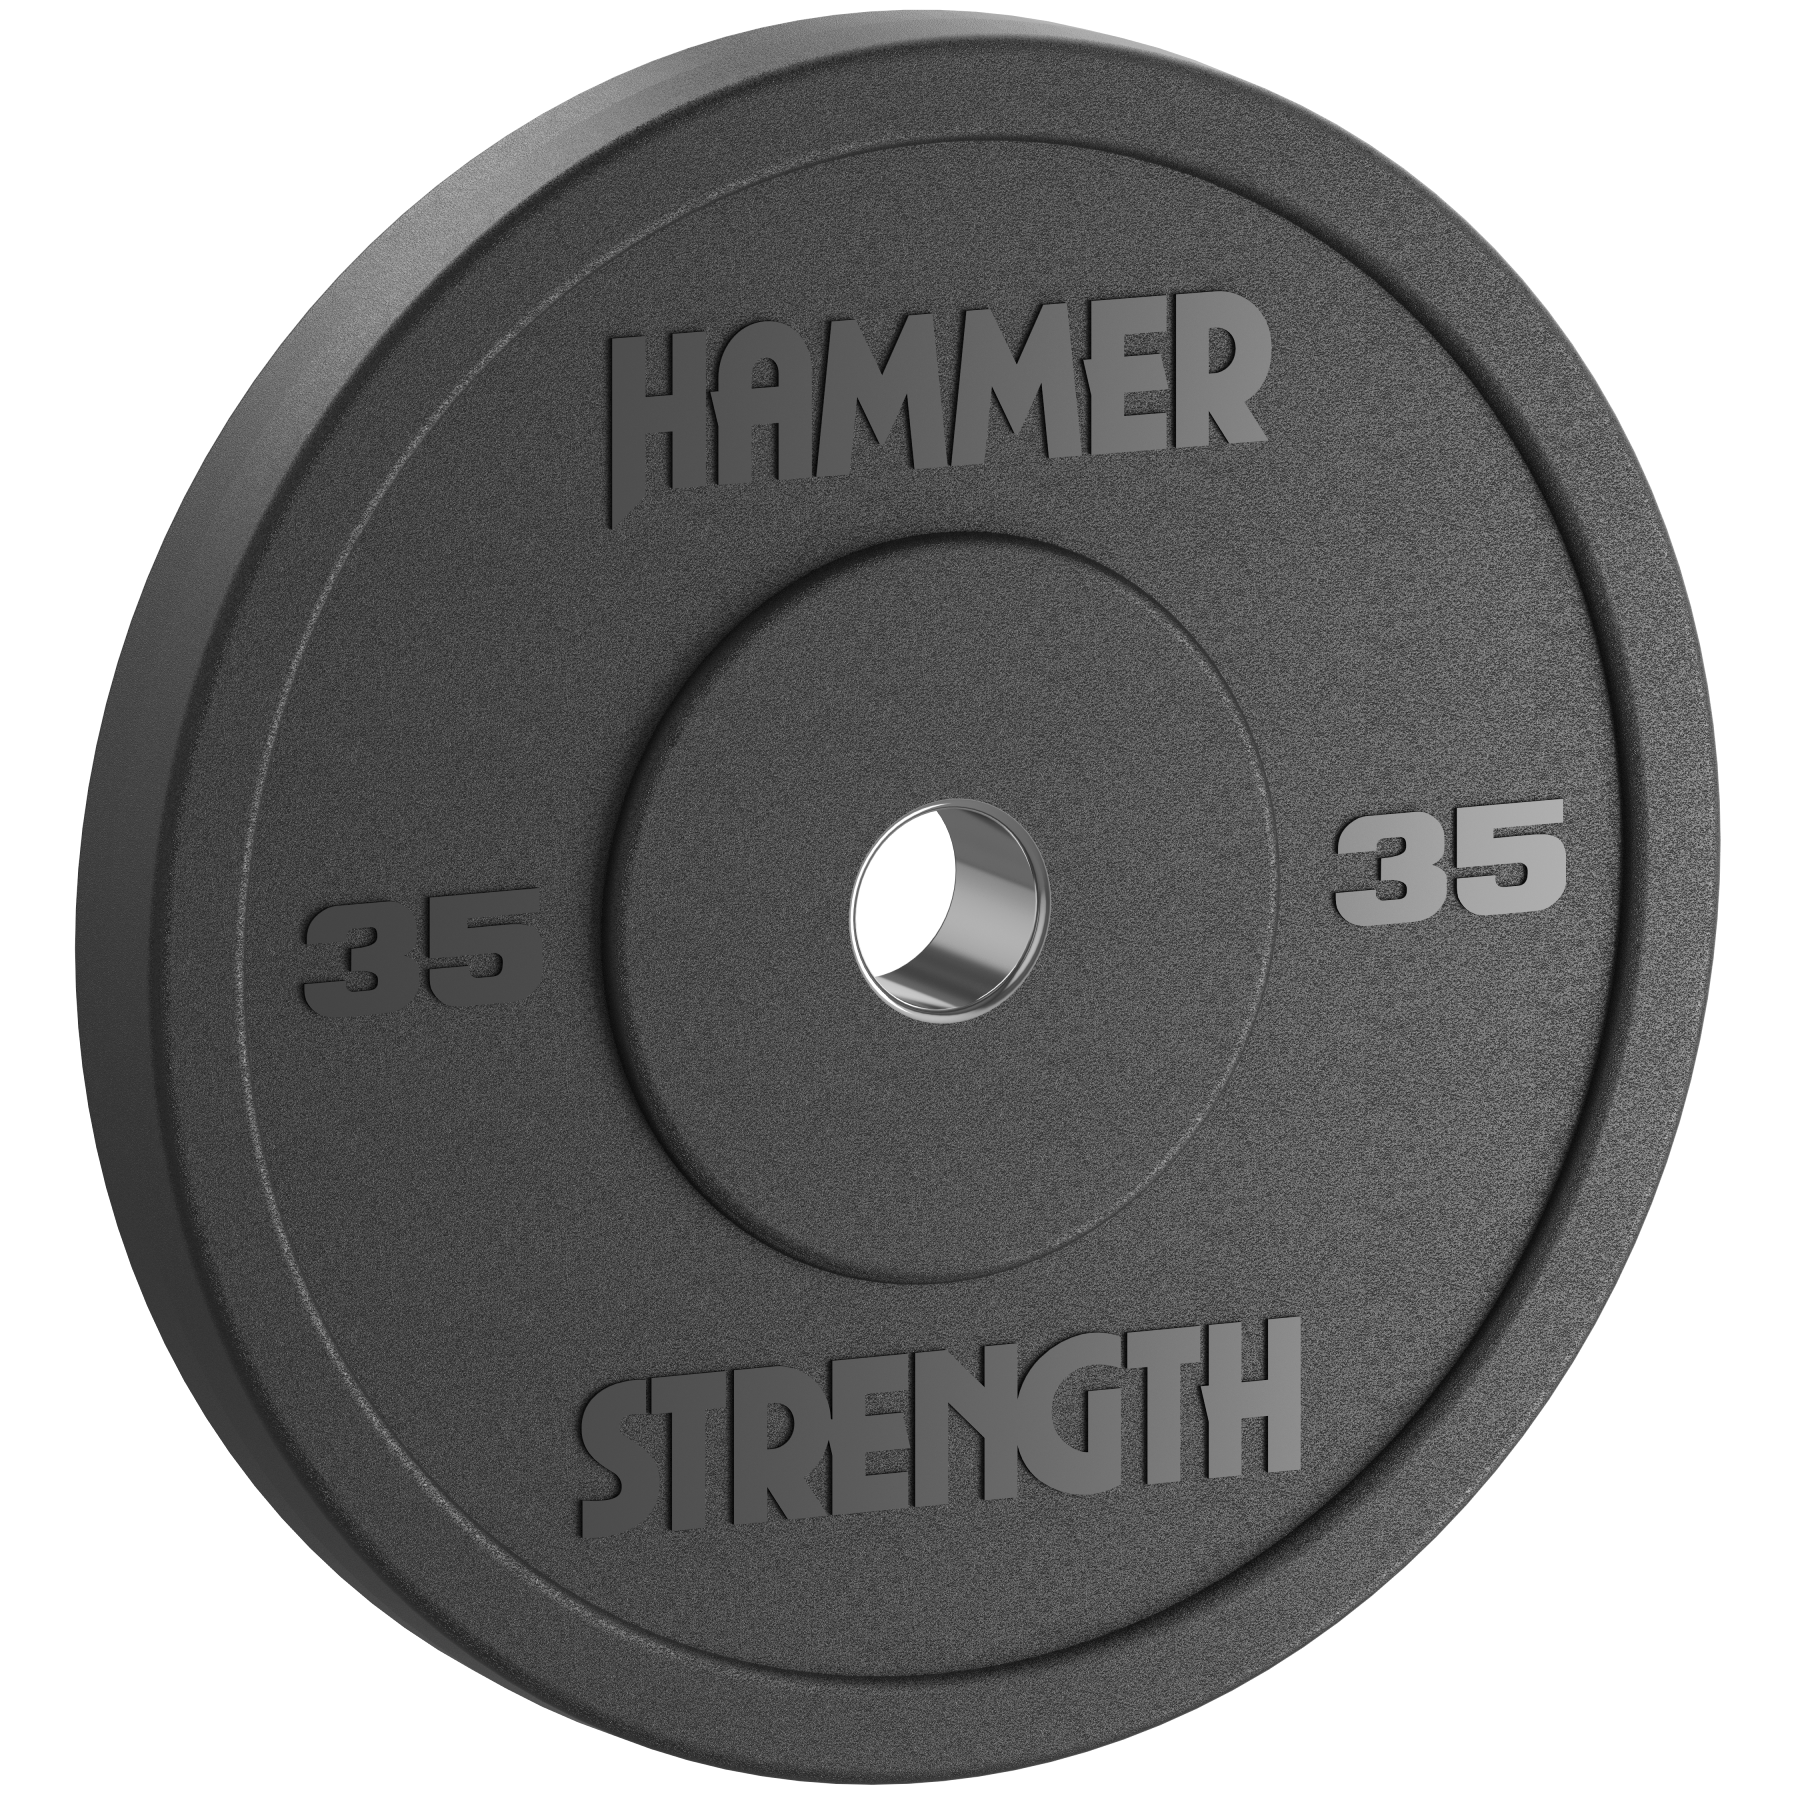 Hammer Strength Standard Rubber Bumper - 35 lbs.